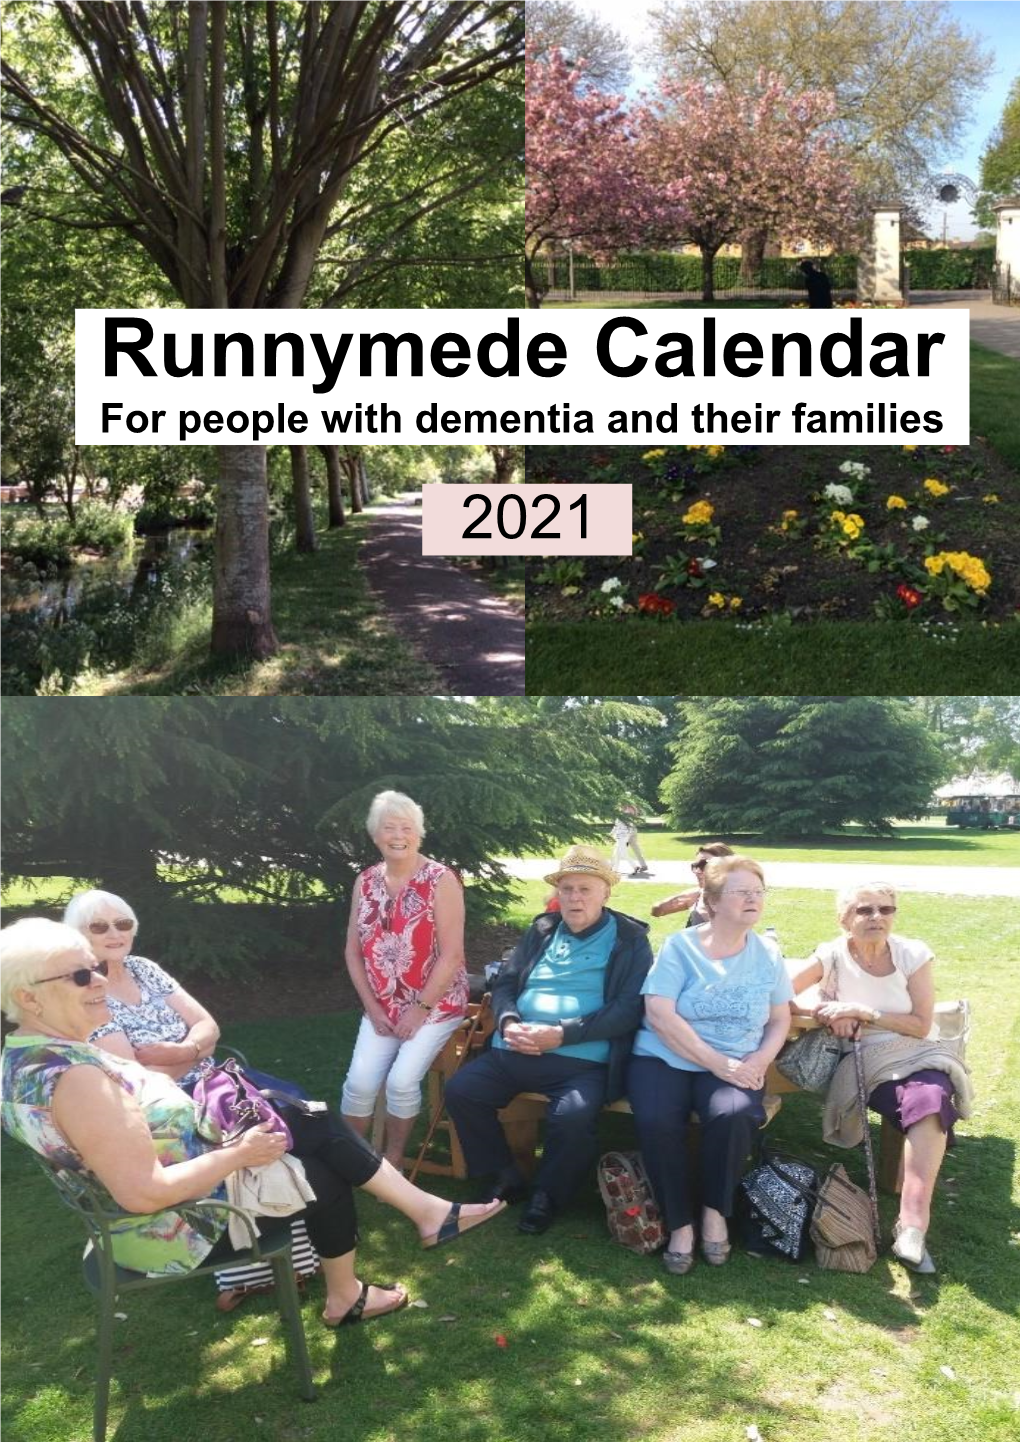 Runnymede Dementia Calendar 2021